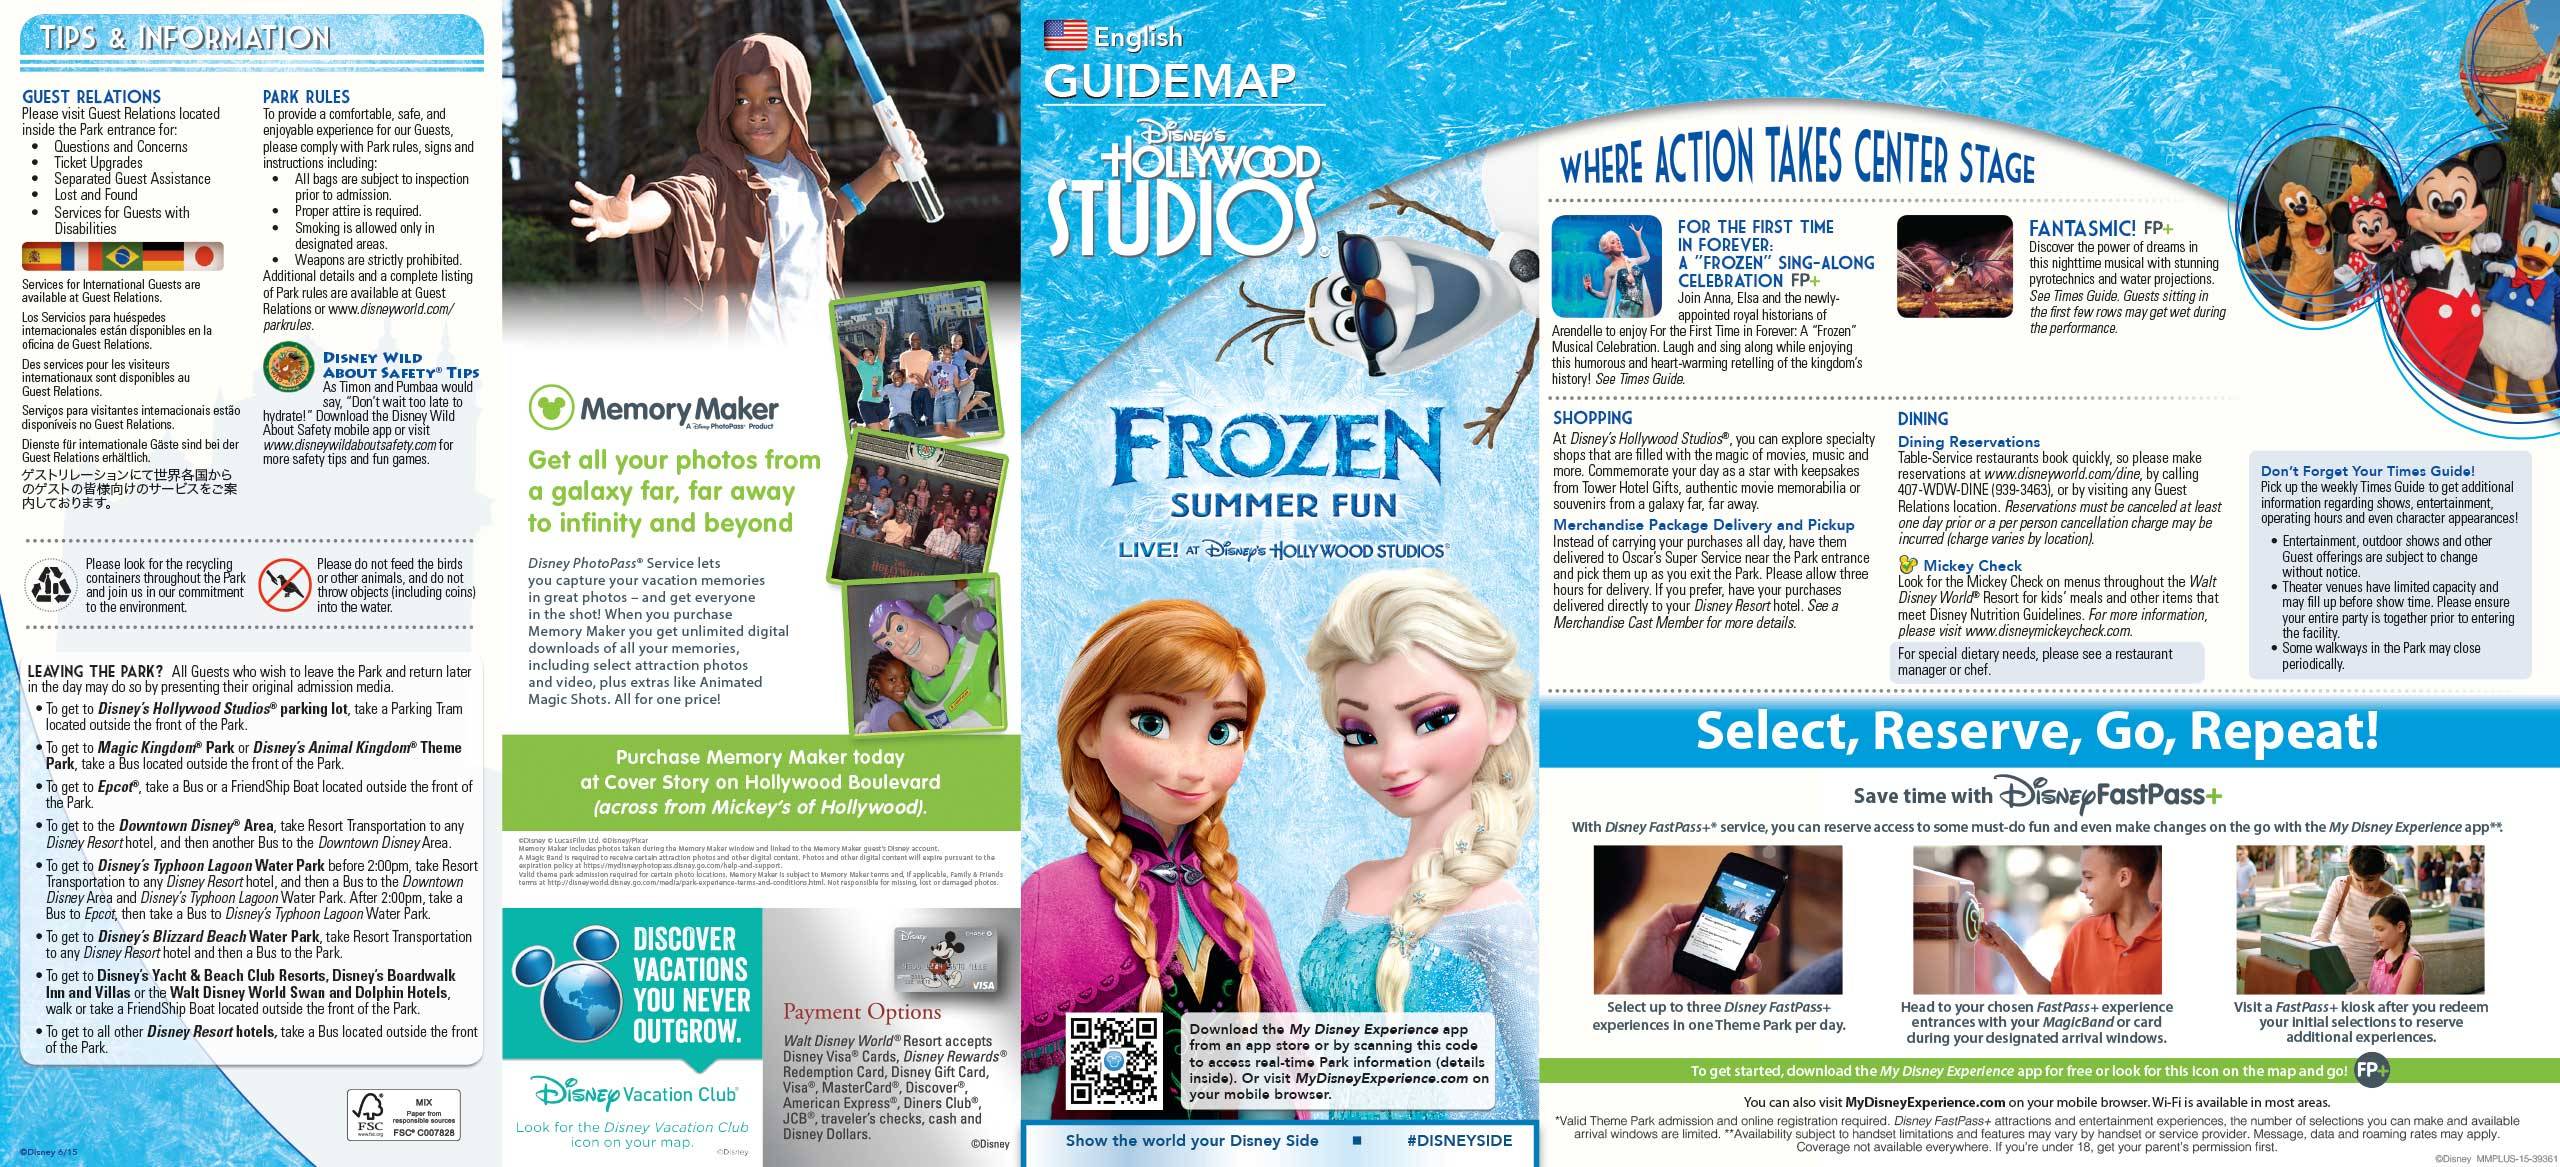 2015 Frozen Summer Fun Guide Map - Front